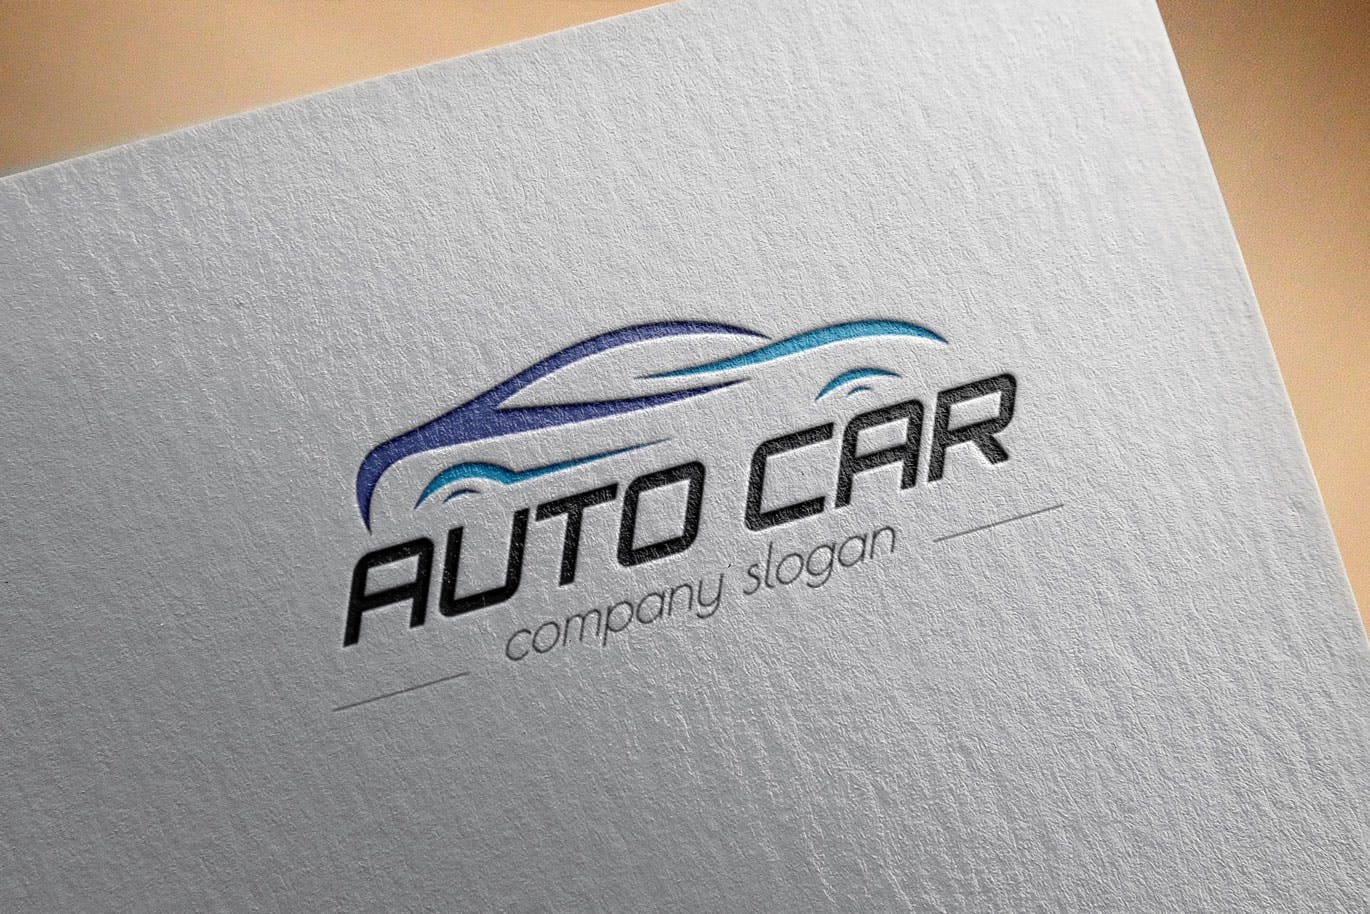 汽车相关企业品牌Logo设计第一素材精选模板 Auto Car Business Logo Template插图(2)